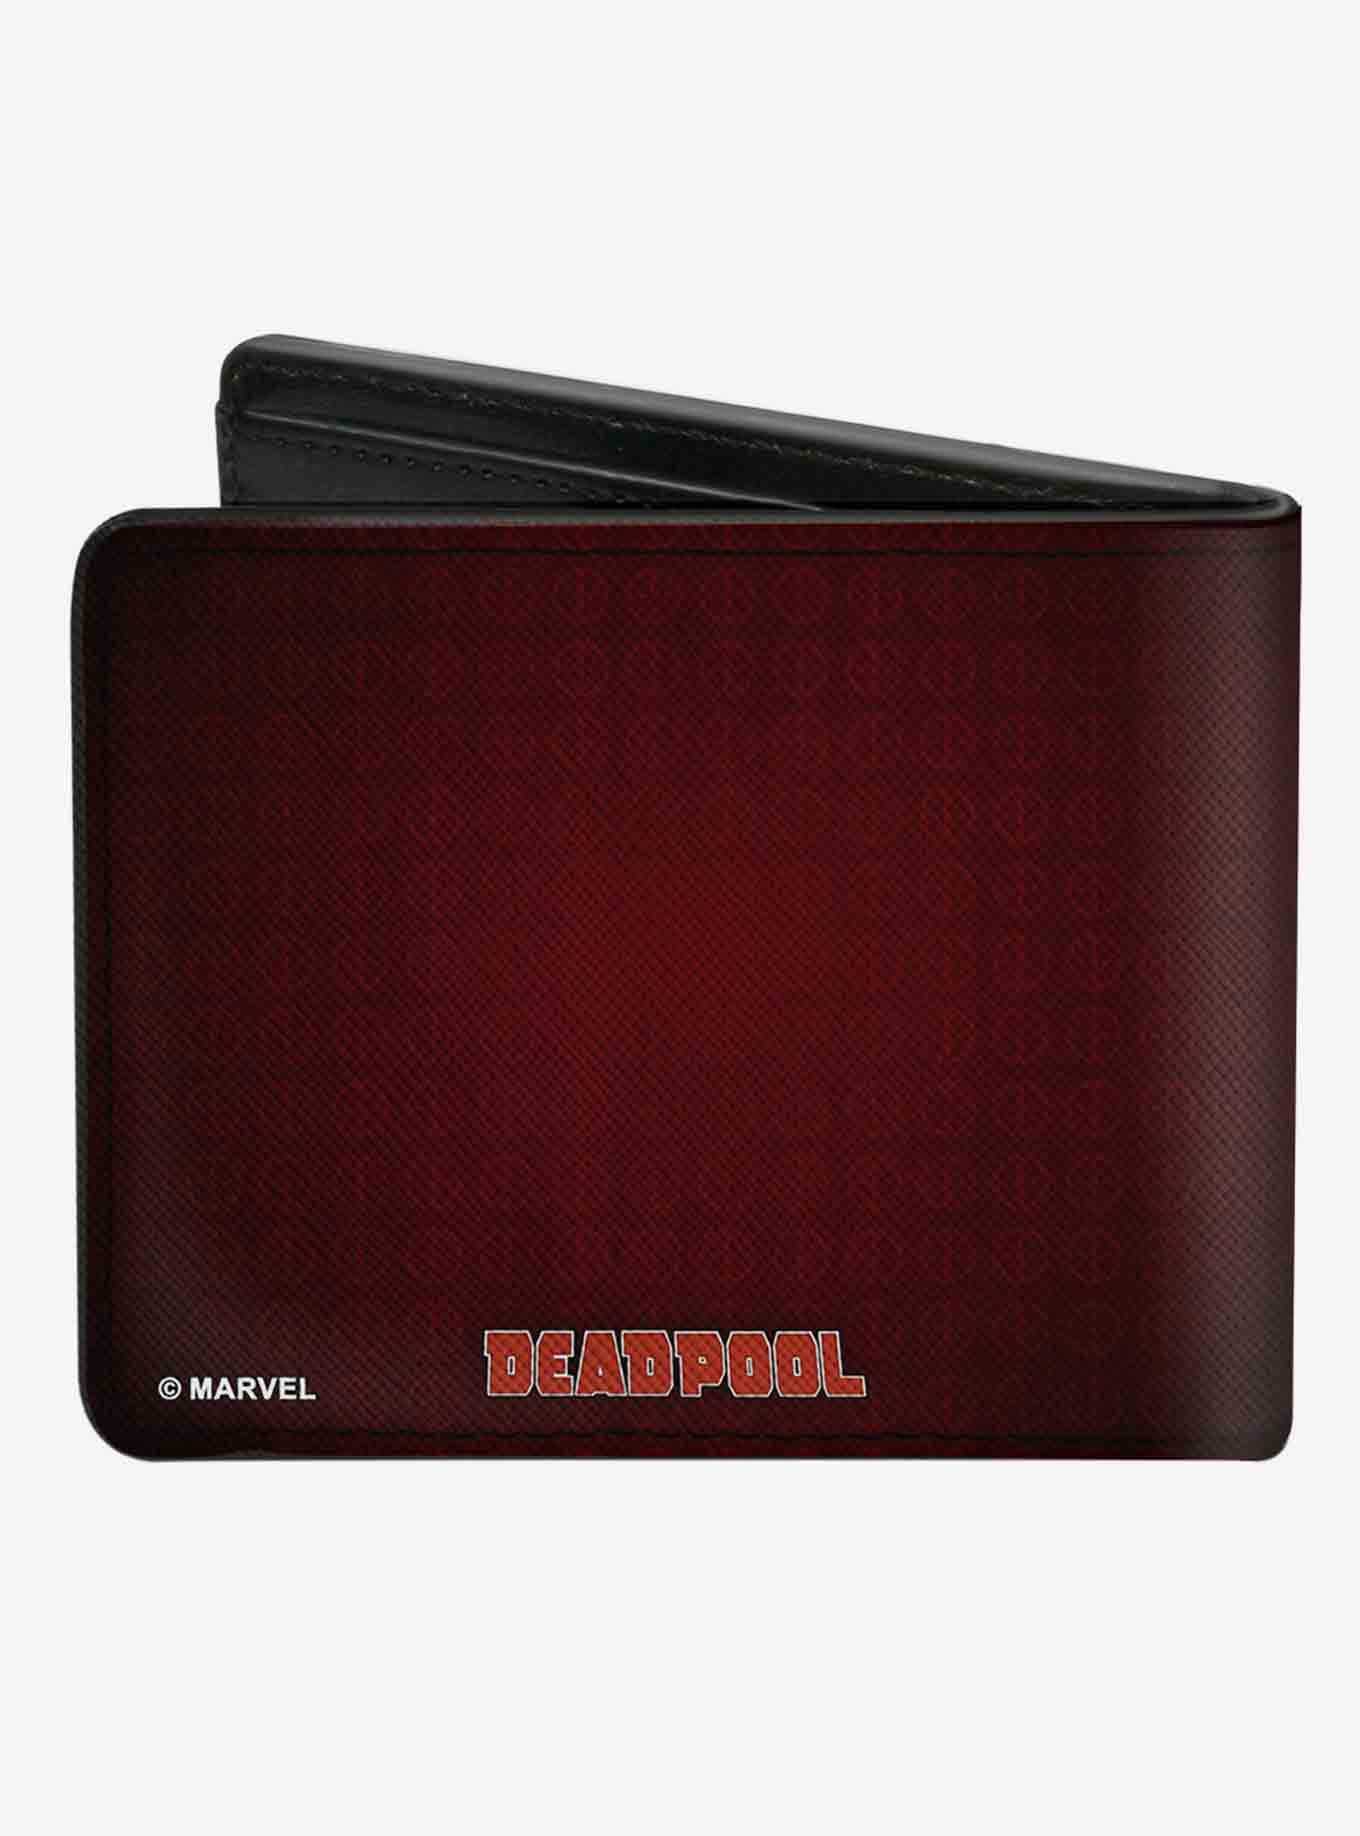 Marvel Deadpool Issue 21 Variant Shakespool Pointing Gun At Skull Bifold Wallet, , hi-res